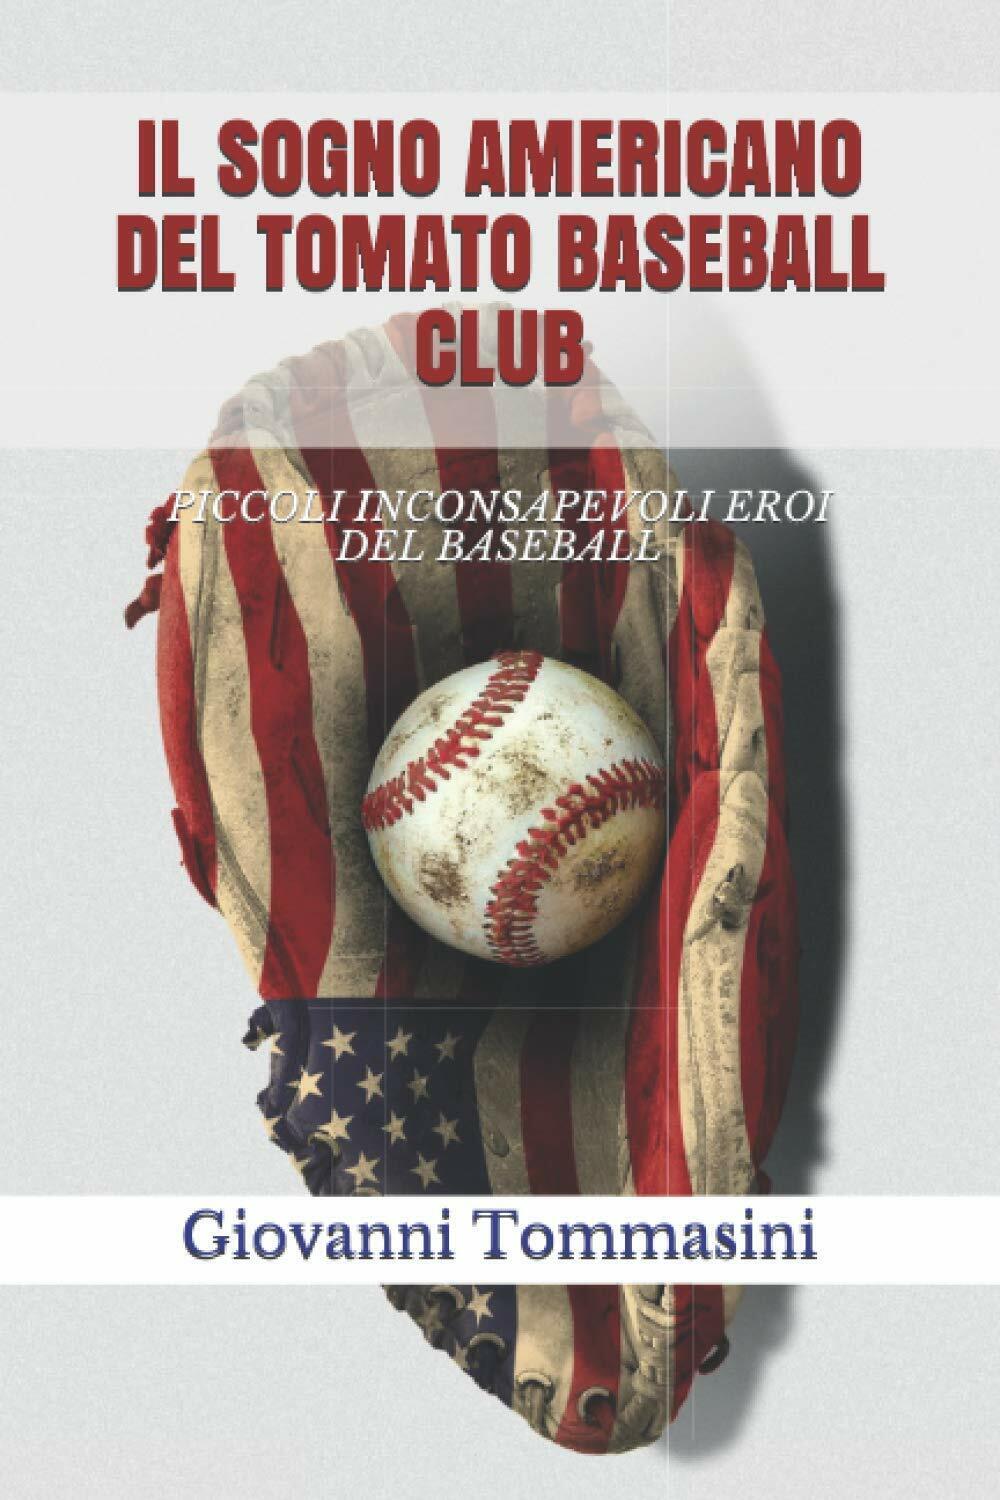 IL SOGNO AMERICANO DEL TOMATO BASEBALL CLUB - Giovanni Tommasini - 2019